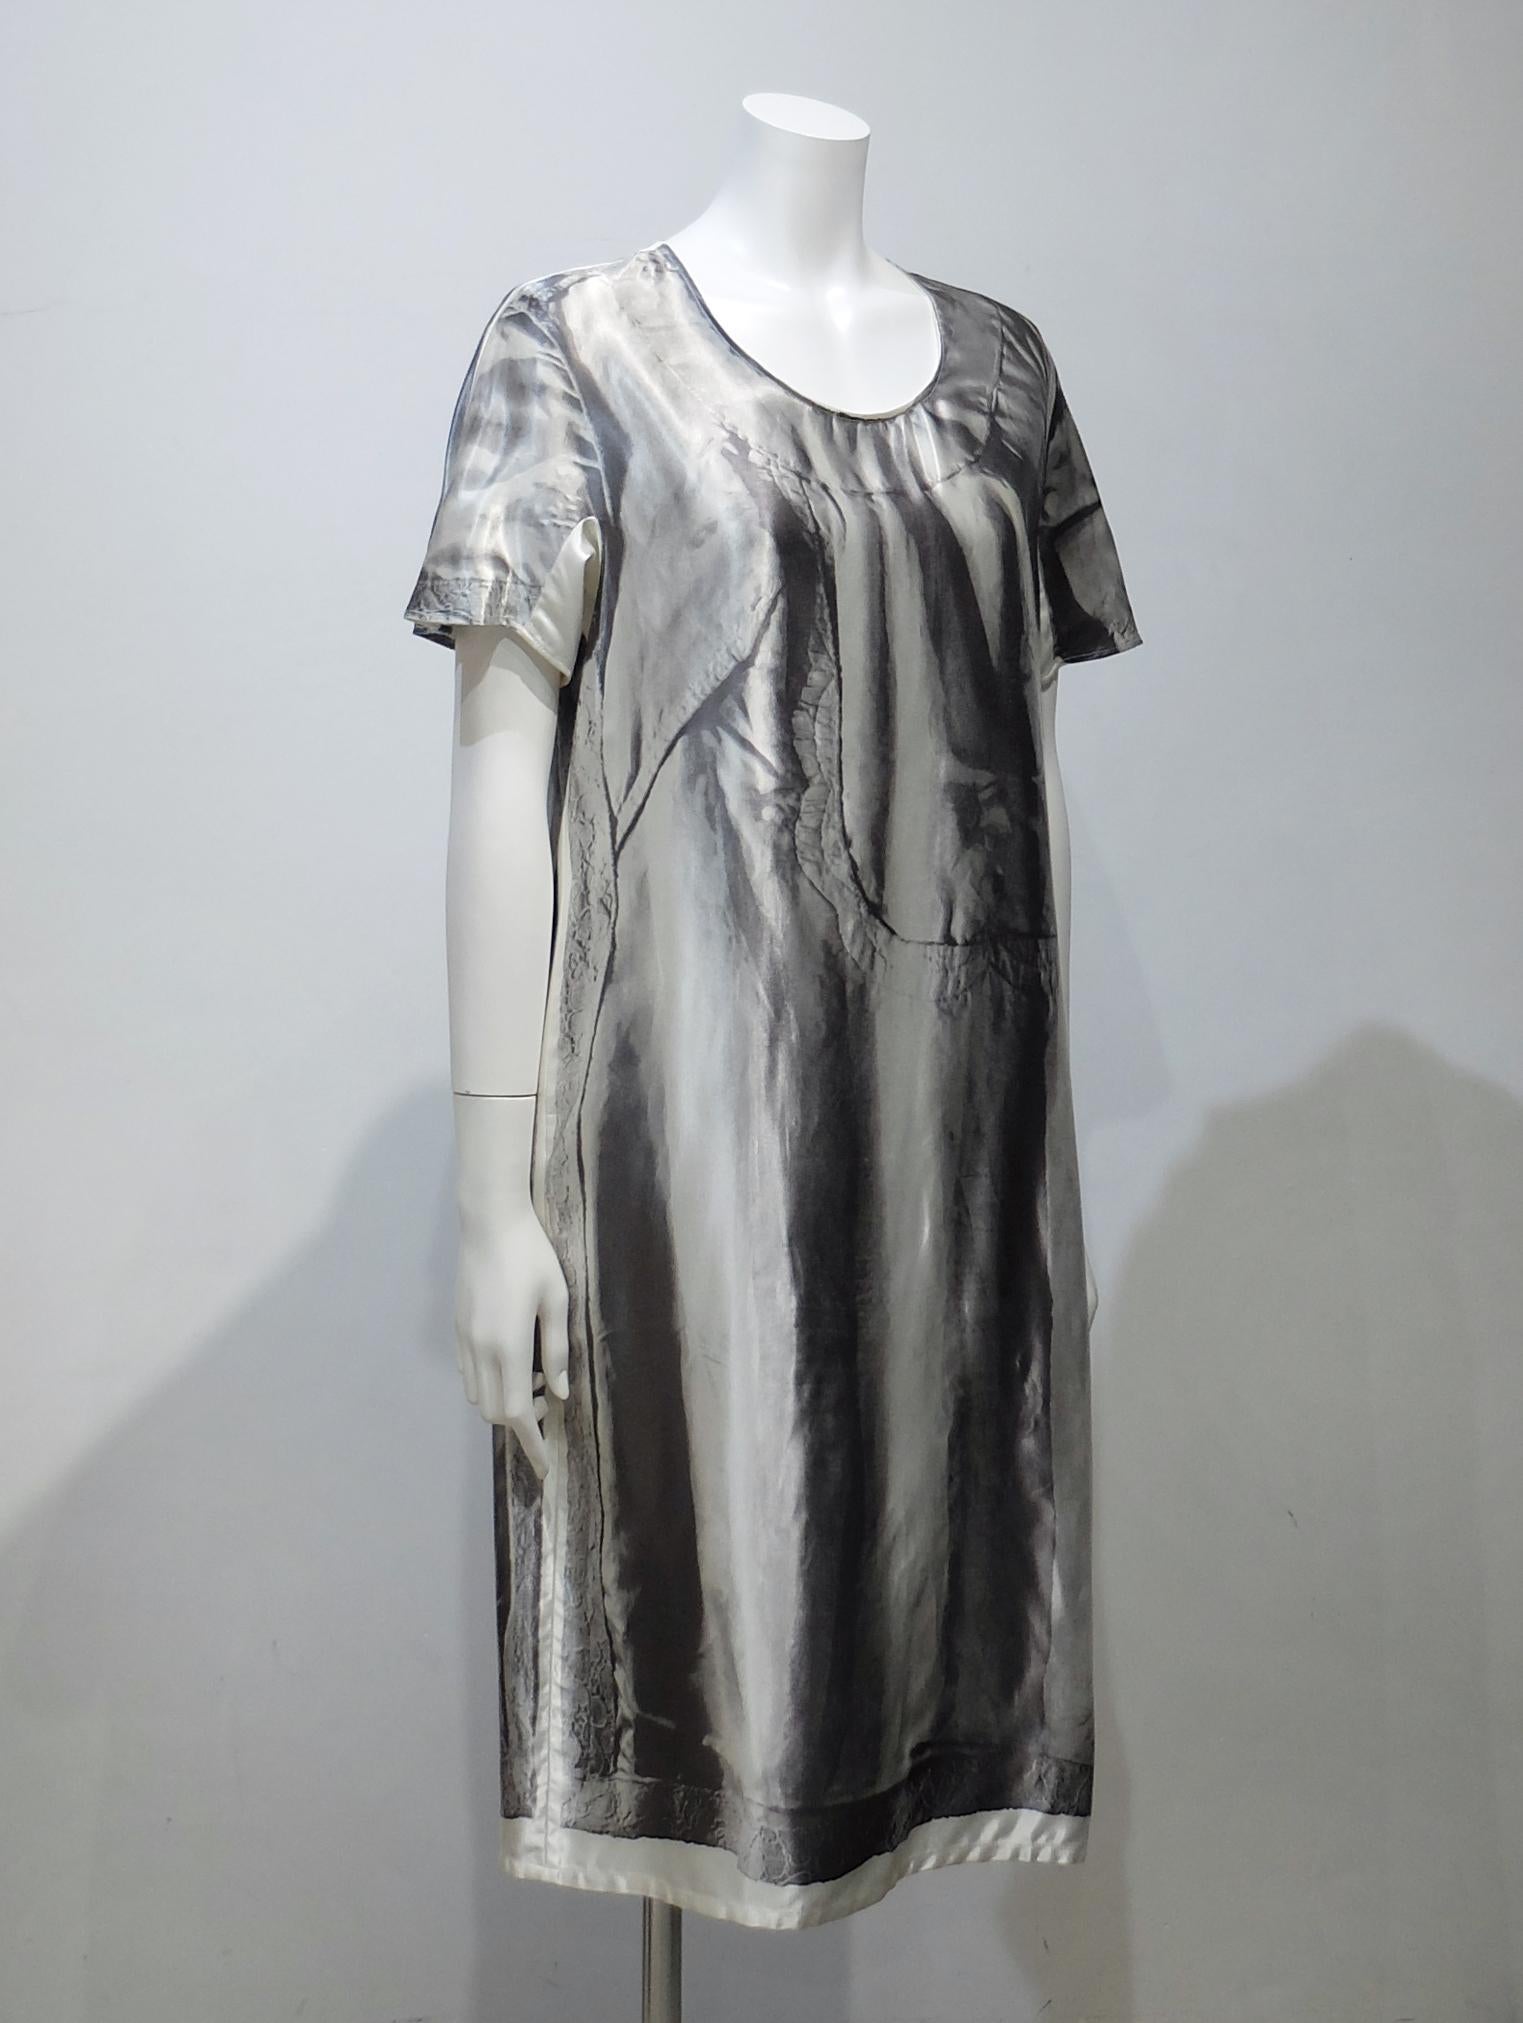 Satiniertes Kleid mit Fotodruck

Hergestellt in Italien
Stoff
100%Rayon
Größe/Maße (ungefähr)
Größe M
Brustumfang 46.5cm (Achselhöhle zu Achselhöhle)
Länge 101cm (Mitte Rücken bis Saum)

Bedingung
Verfärbung des Labels